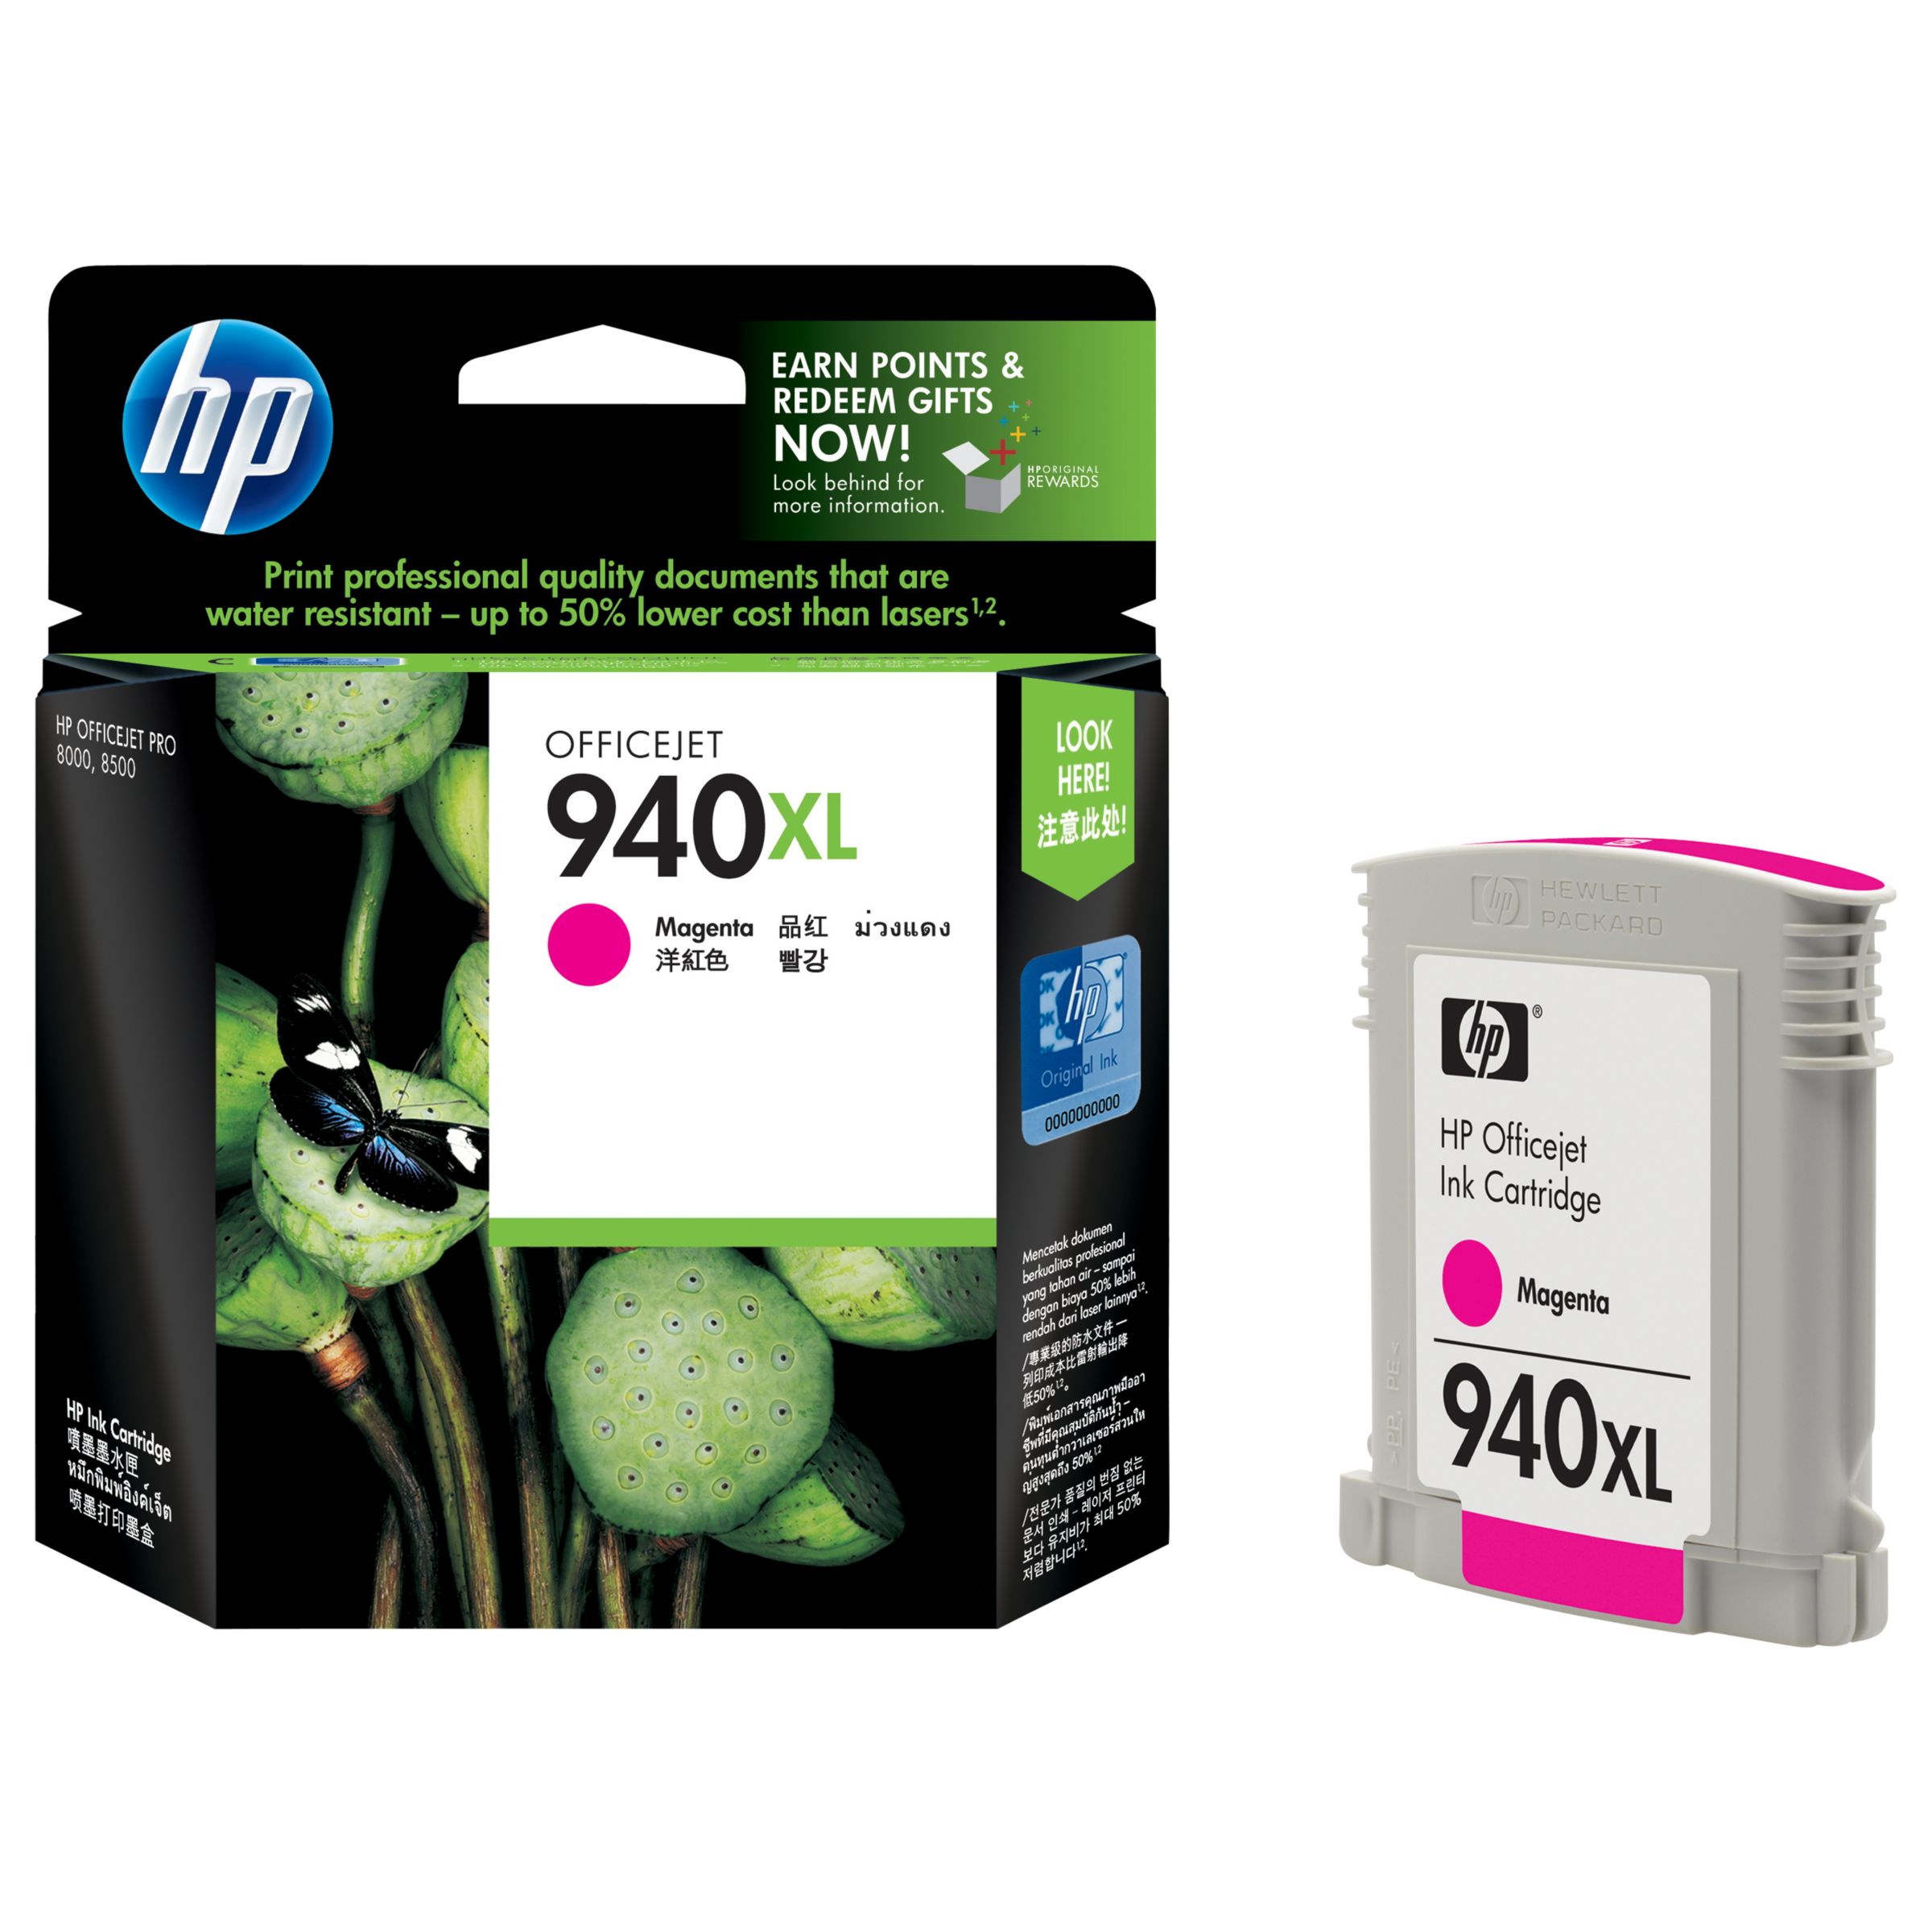 HP Officejet 940XL Ink Cartridge